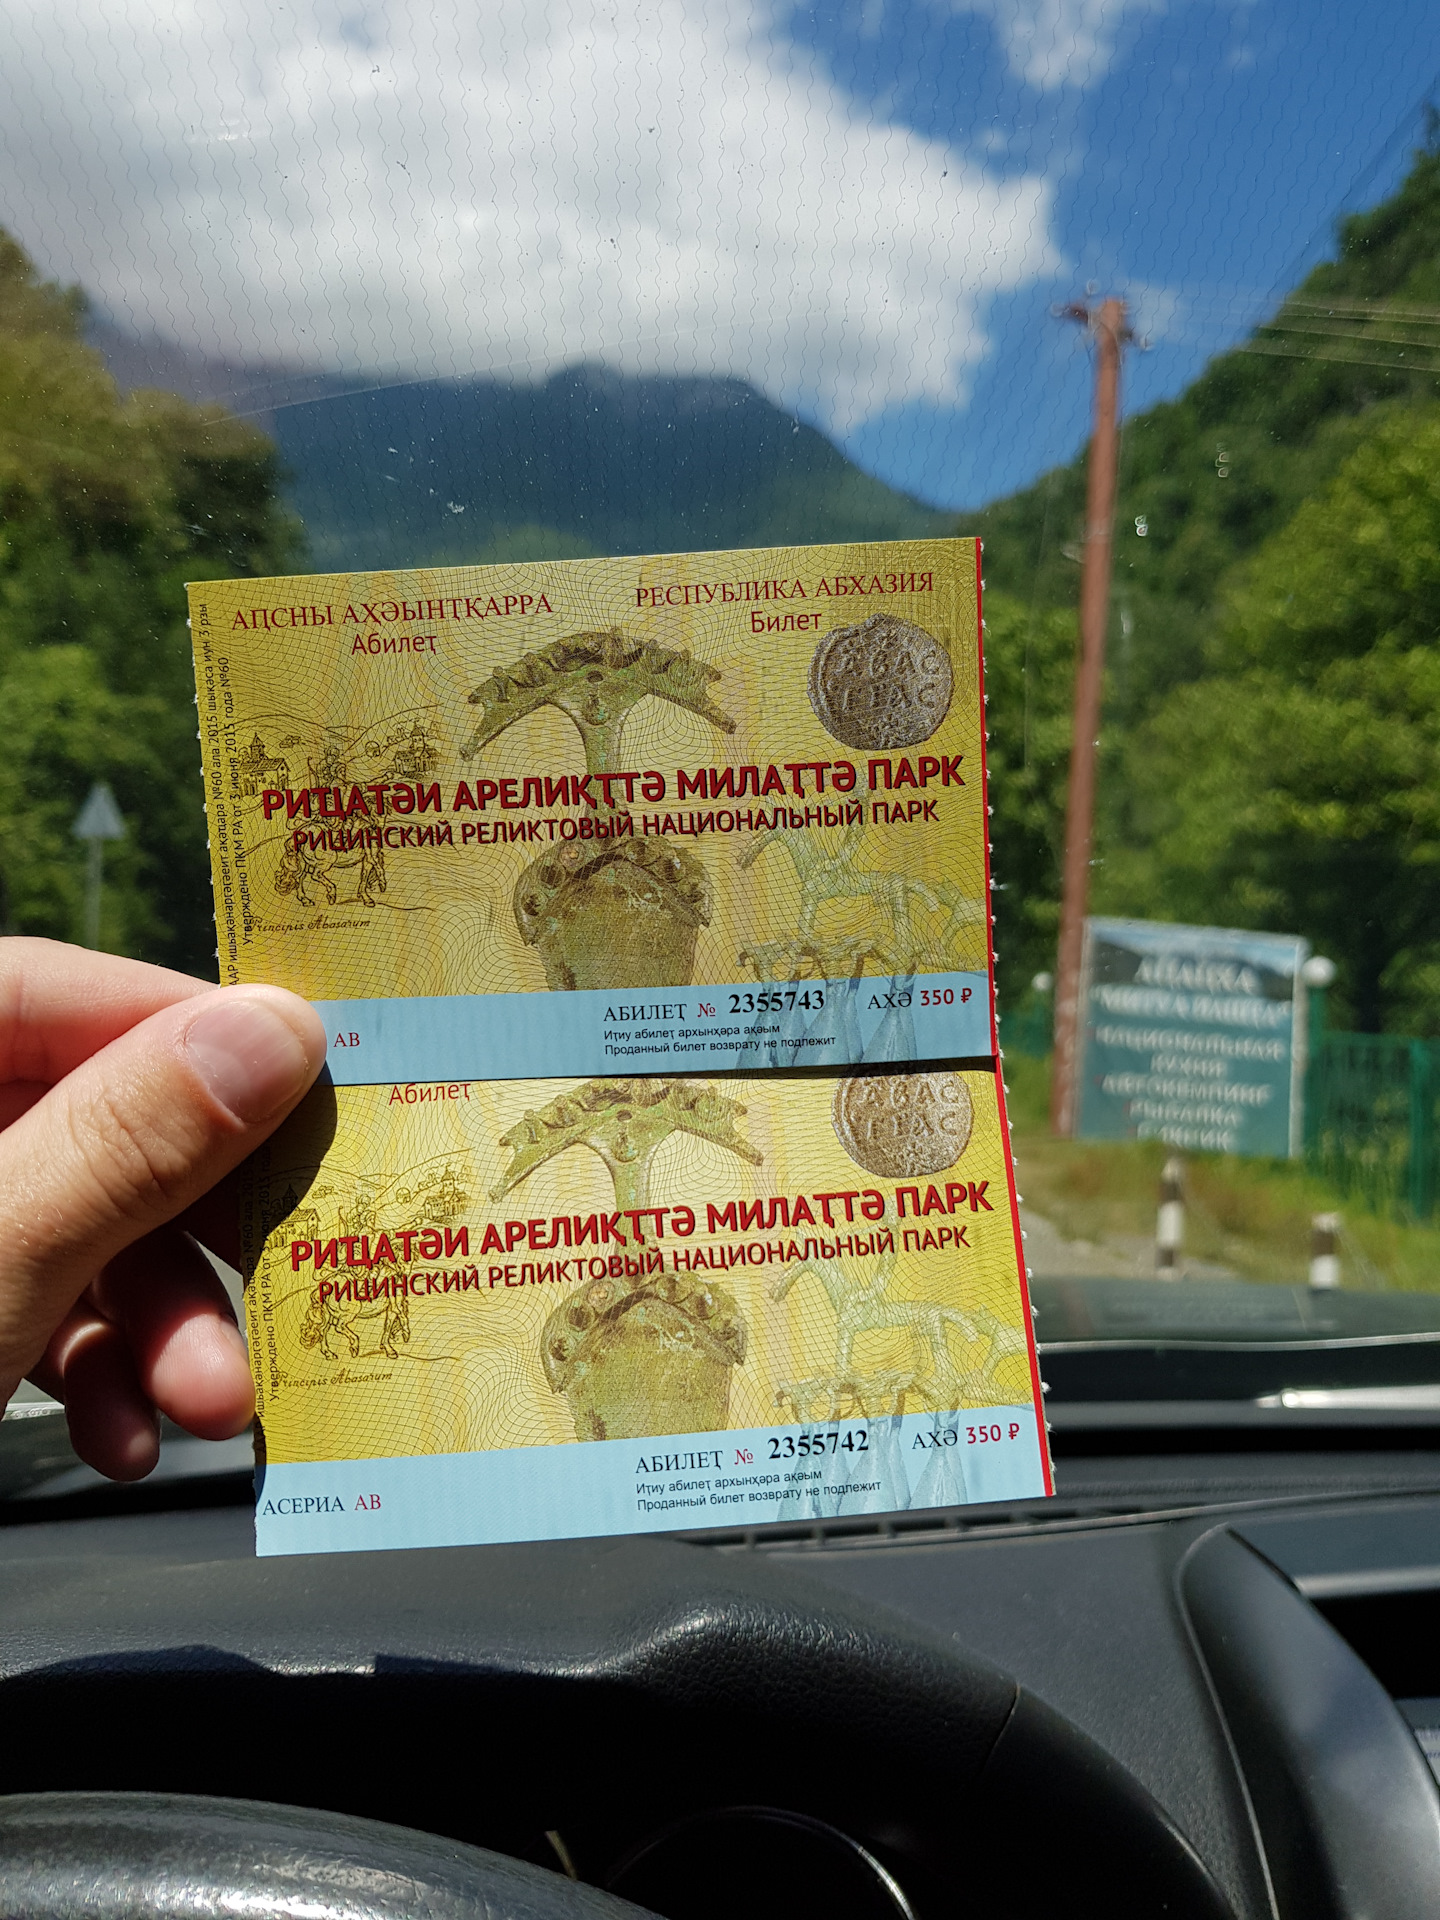 Как ездить на абхазском учете. Рицинский реликтовый национальный парк билет. Билеты в Абхазию. Абхазия билеты на самолет. Билет на самолет до Абхазии.